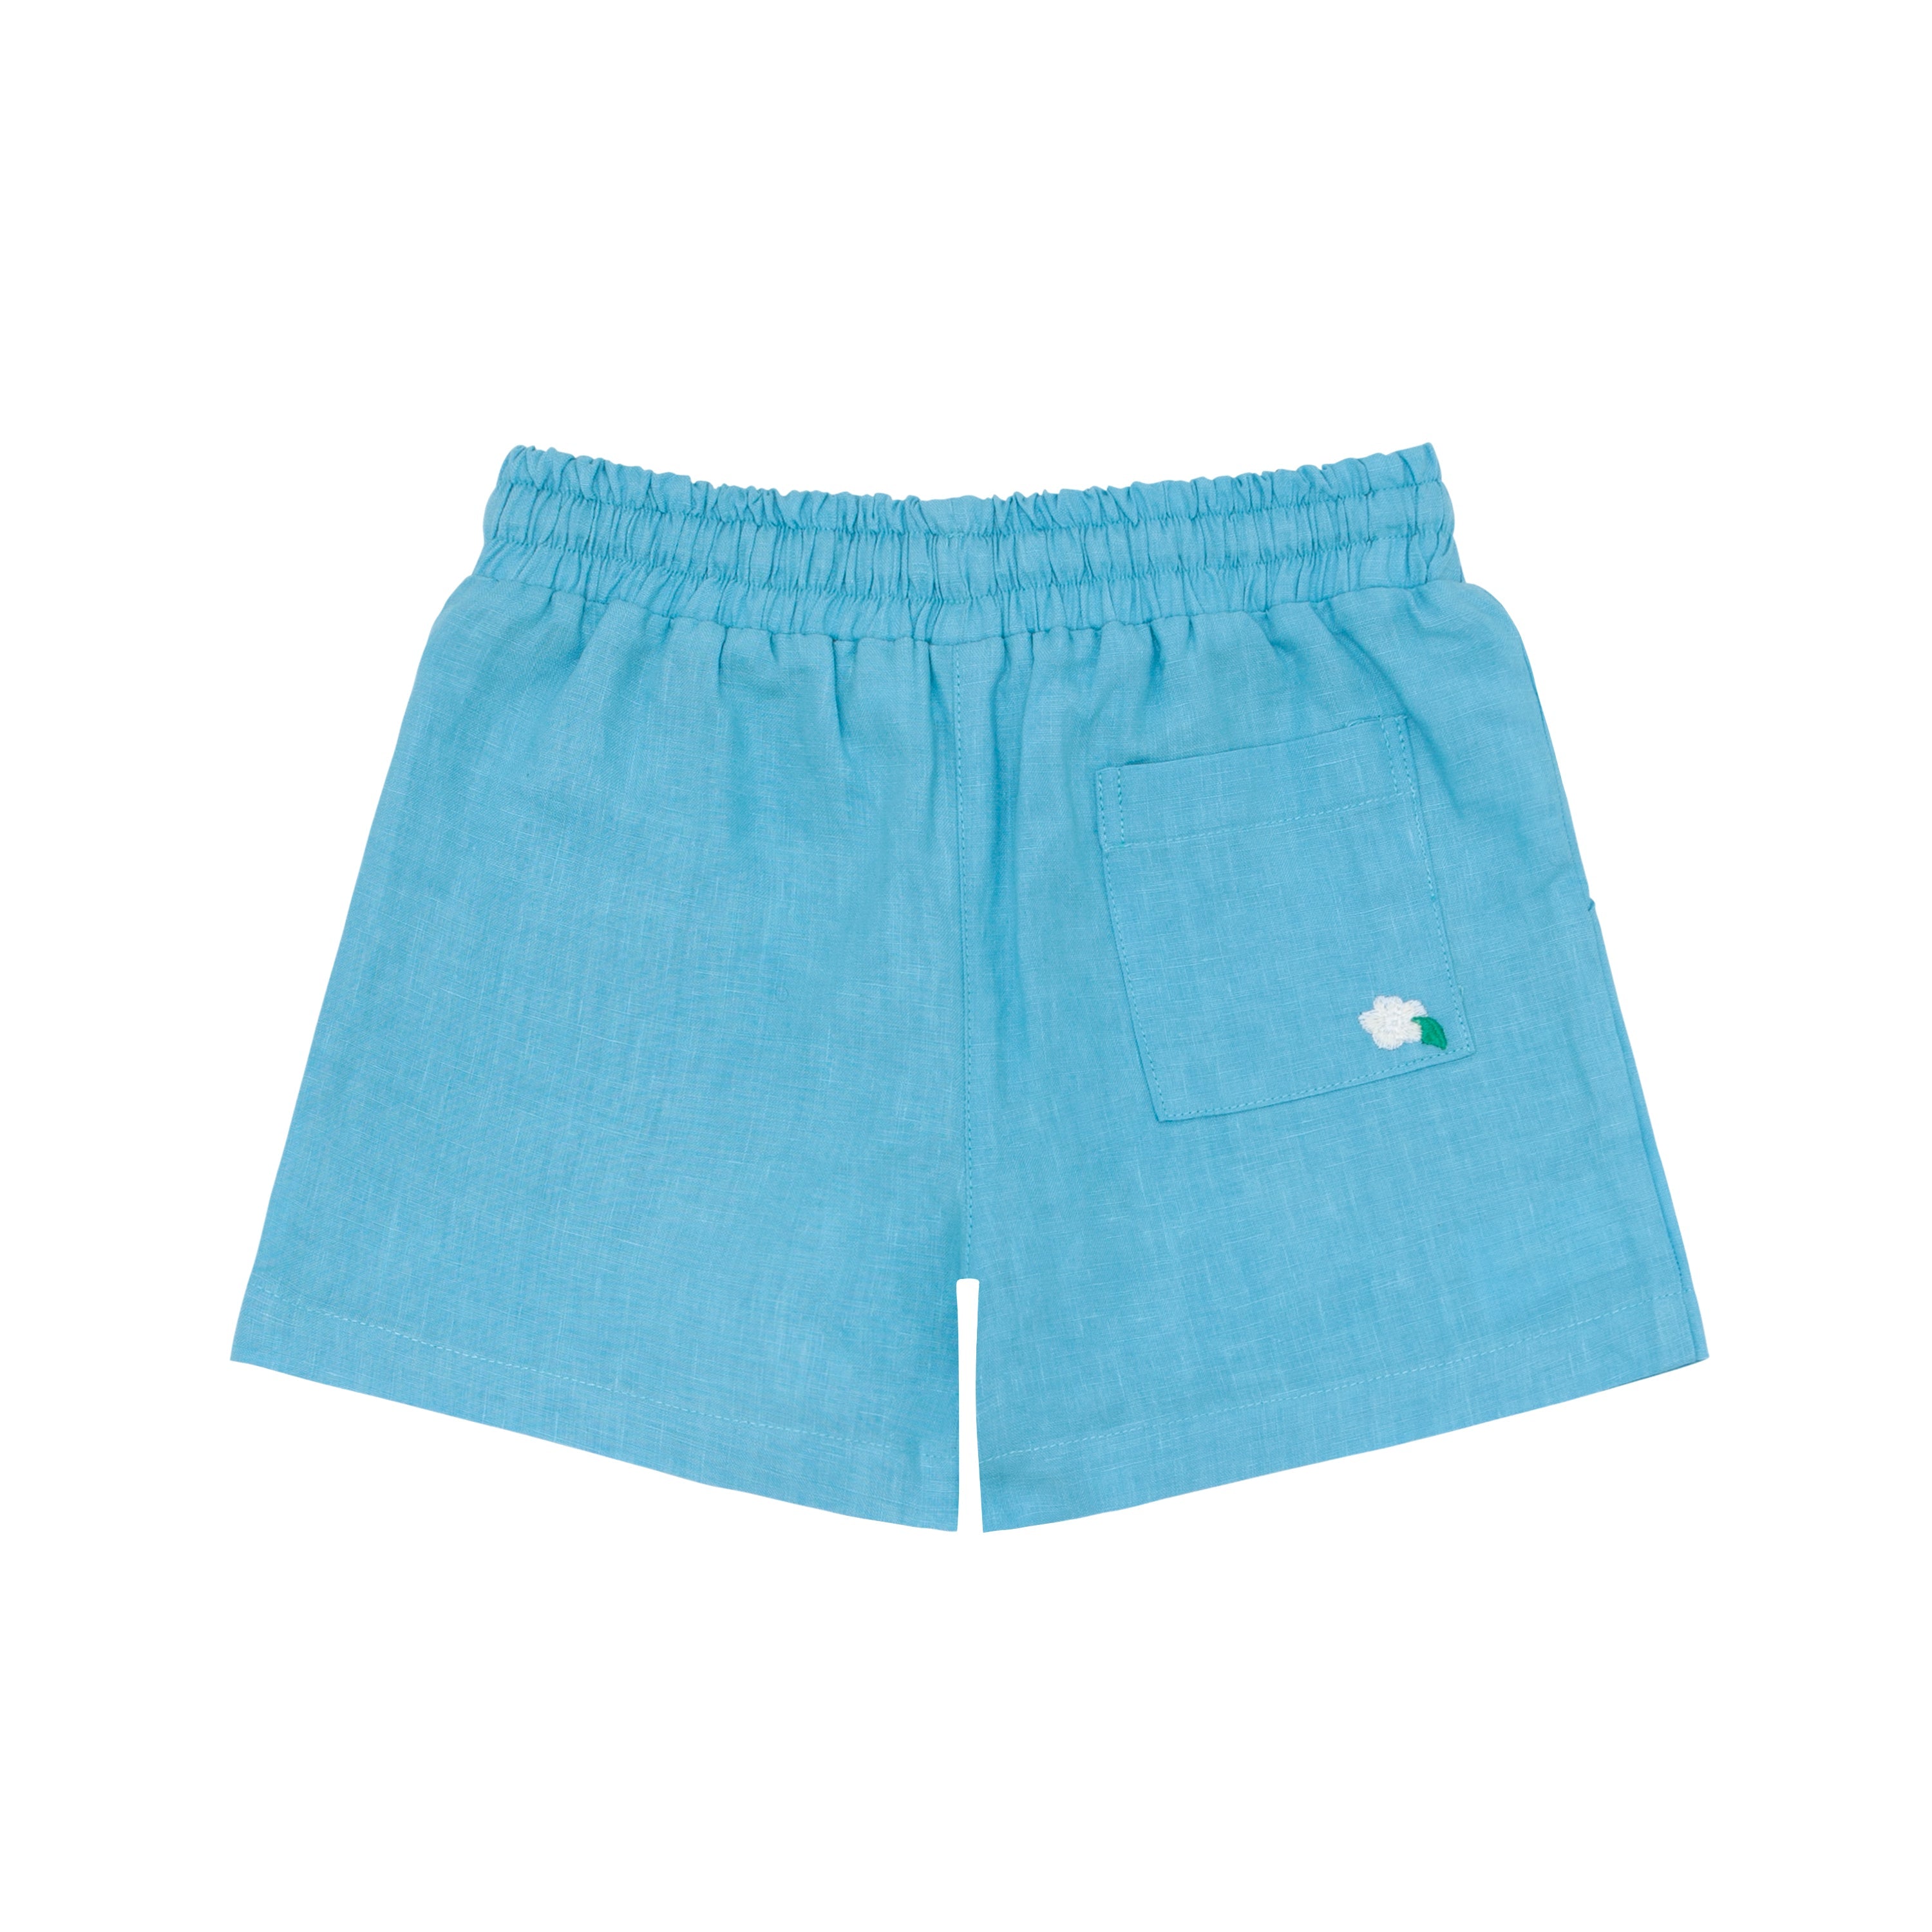 Fanm Mon x Minnow Boy's Linen Shorts by Fanm Mon